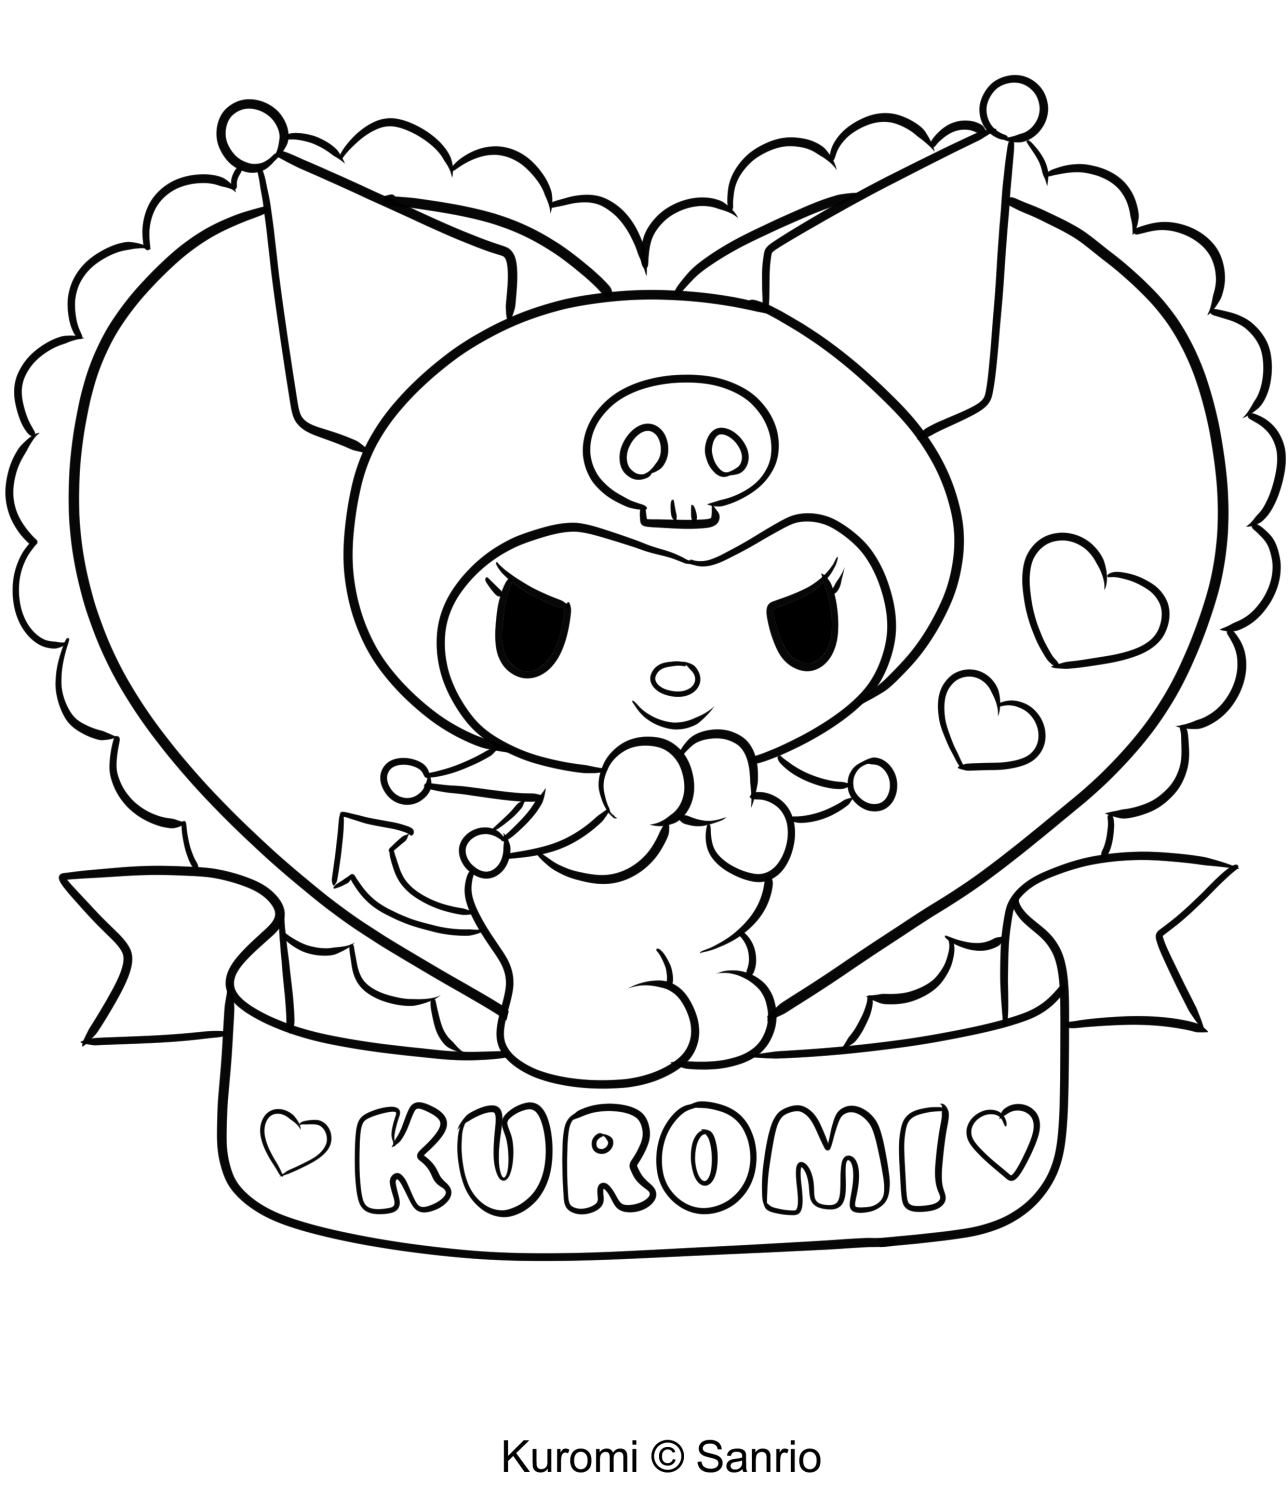 Розмальовка Куромі 24 із "Моєї мелодії" для друку та розфарбовування